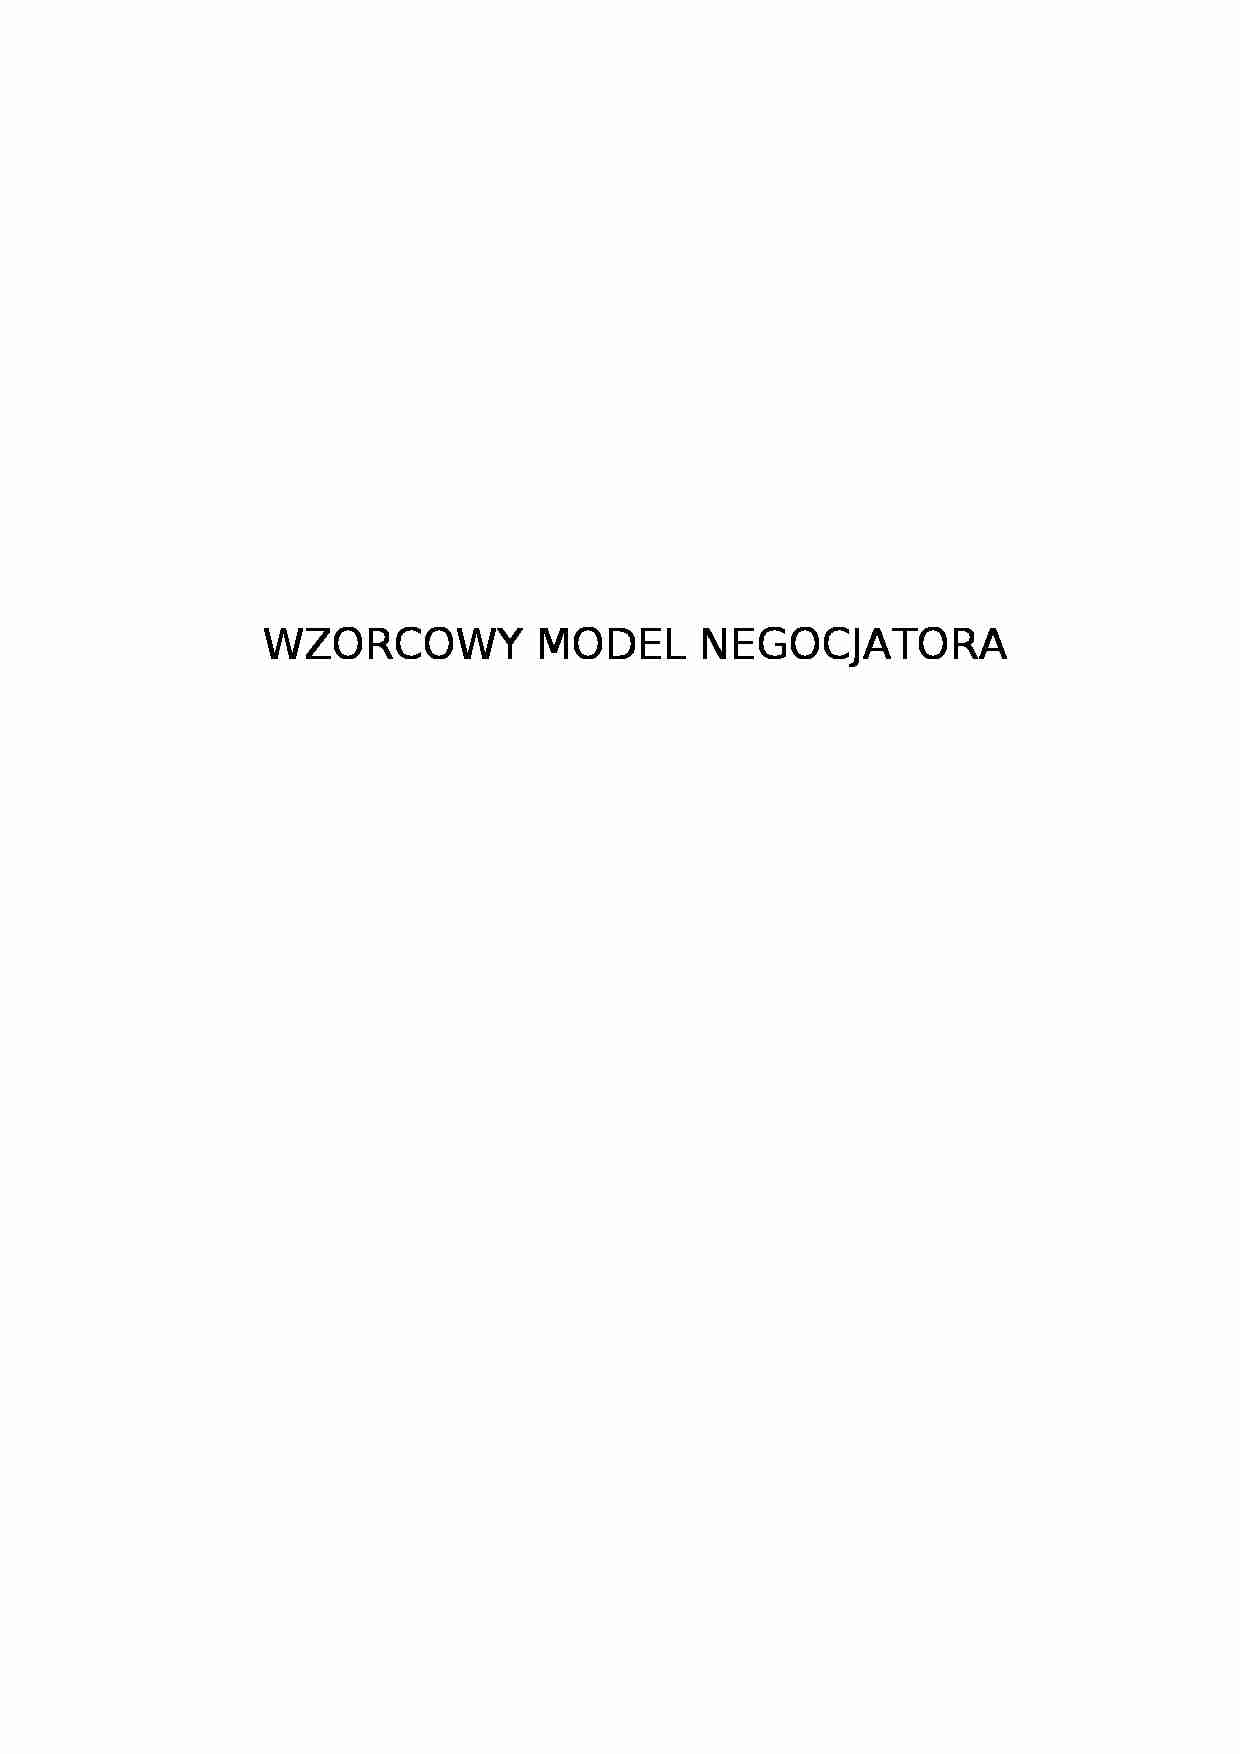 Wzorcowy model negocjatora - strona 1